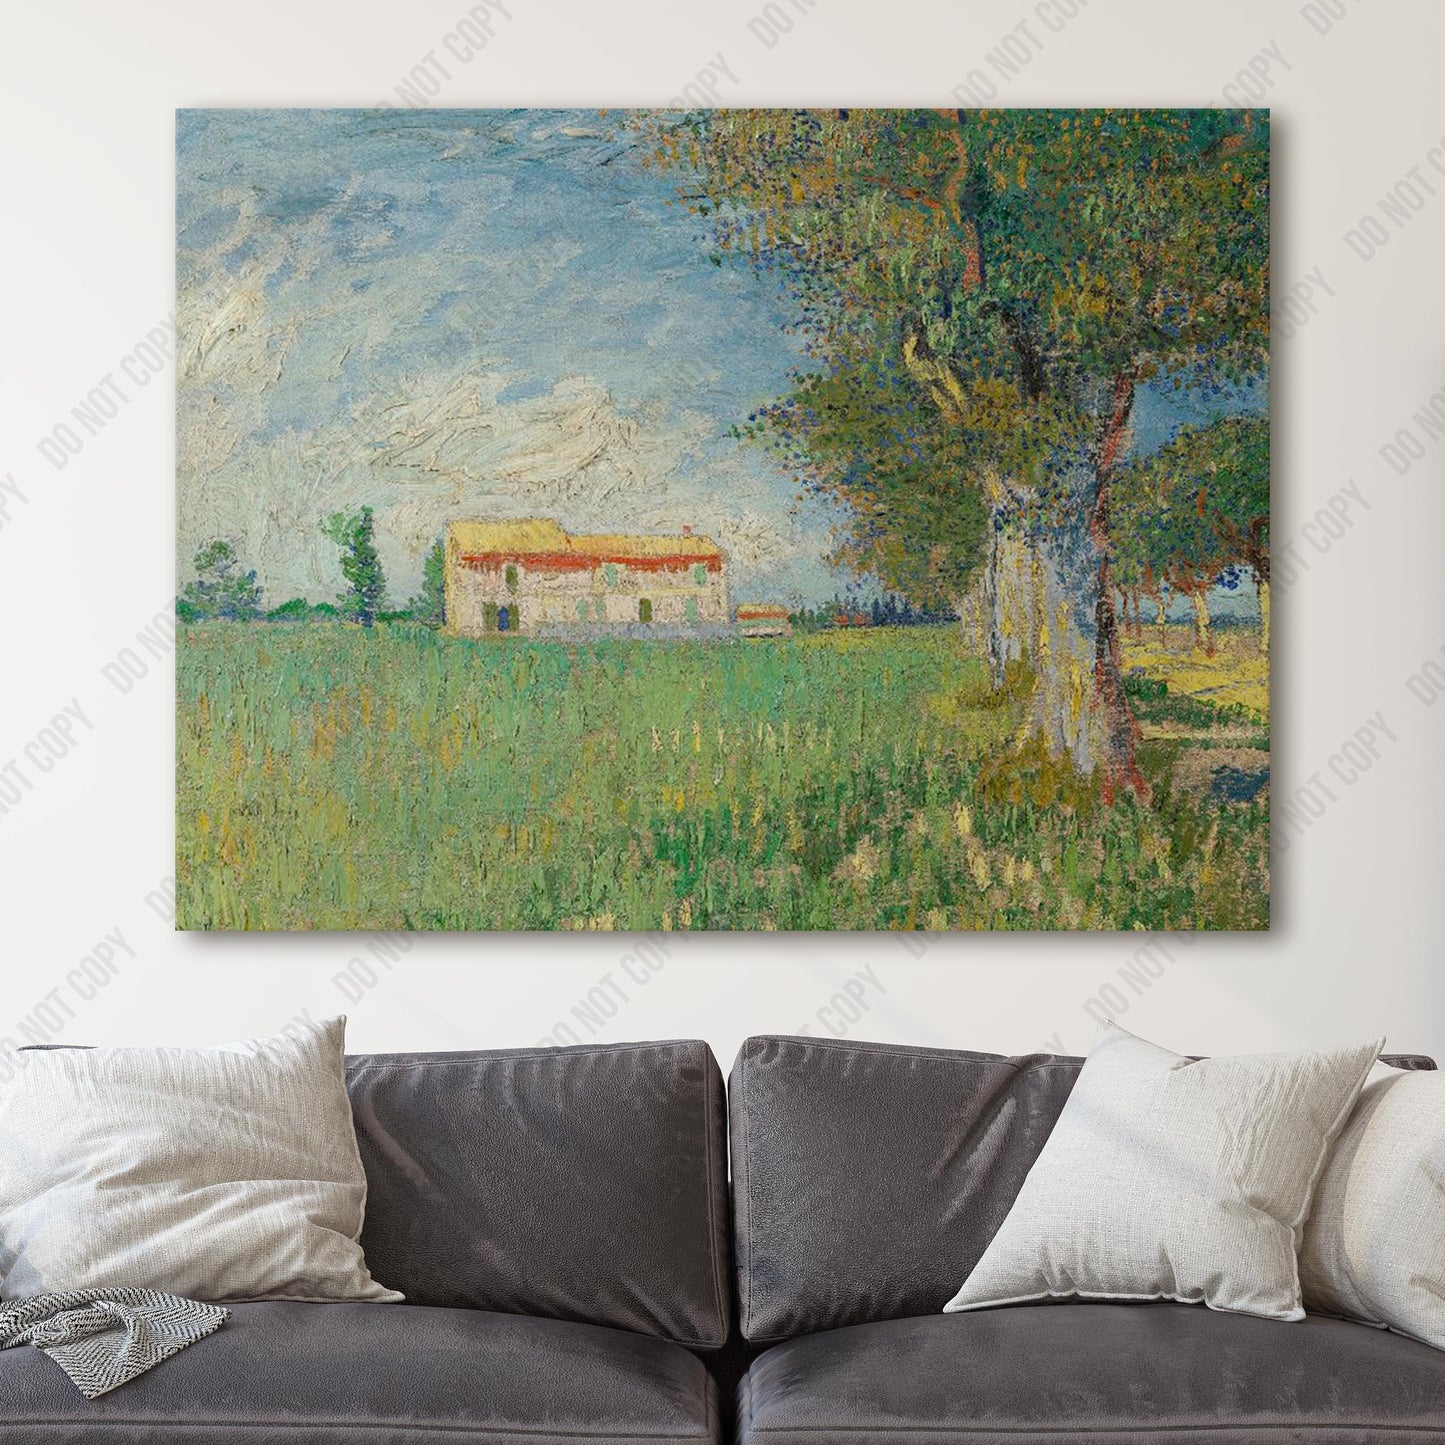 Farmhouse in a Wheatfield (1888) by Van Gogh